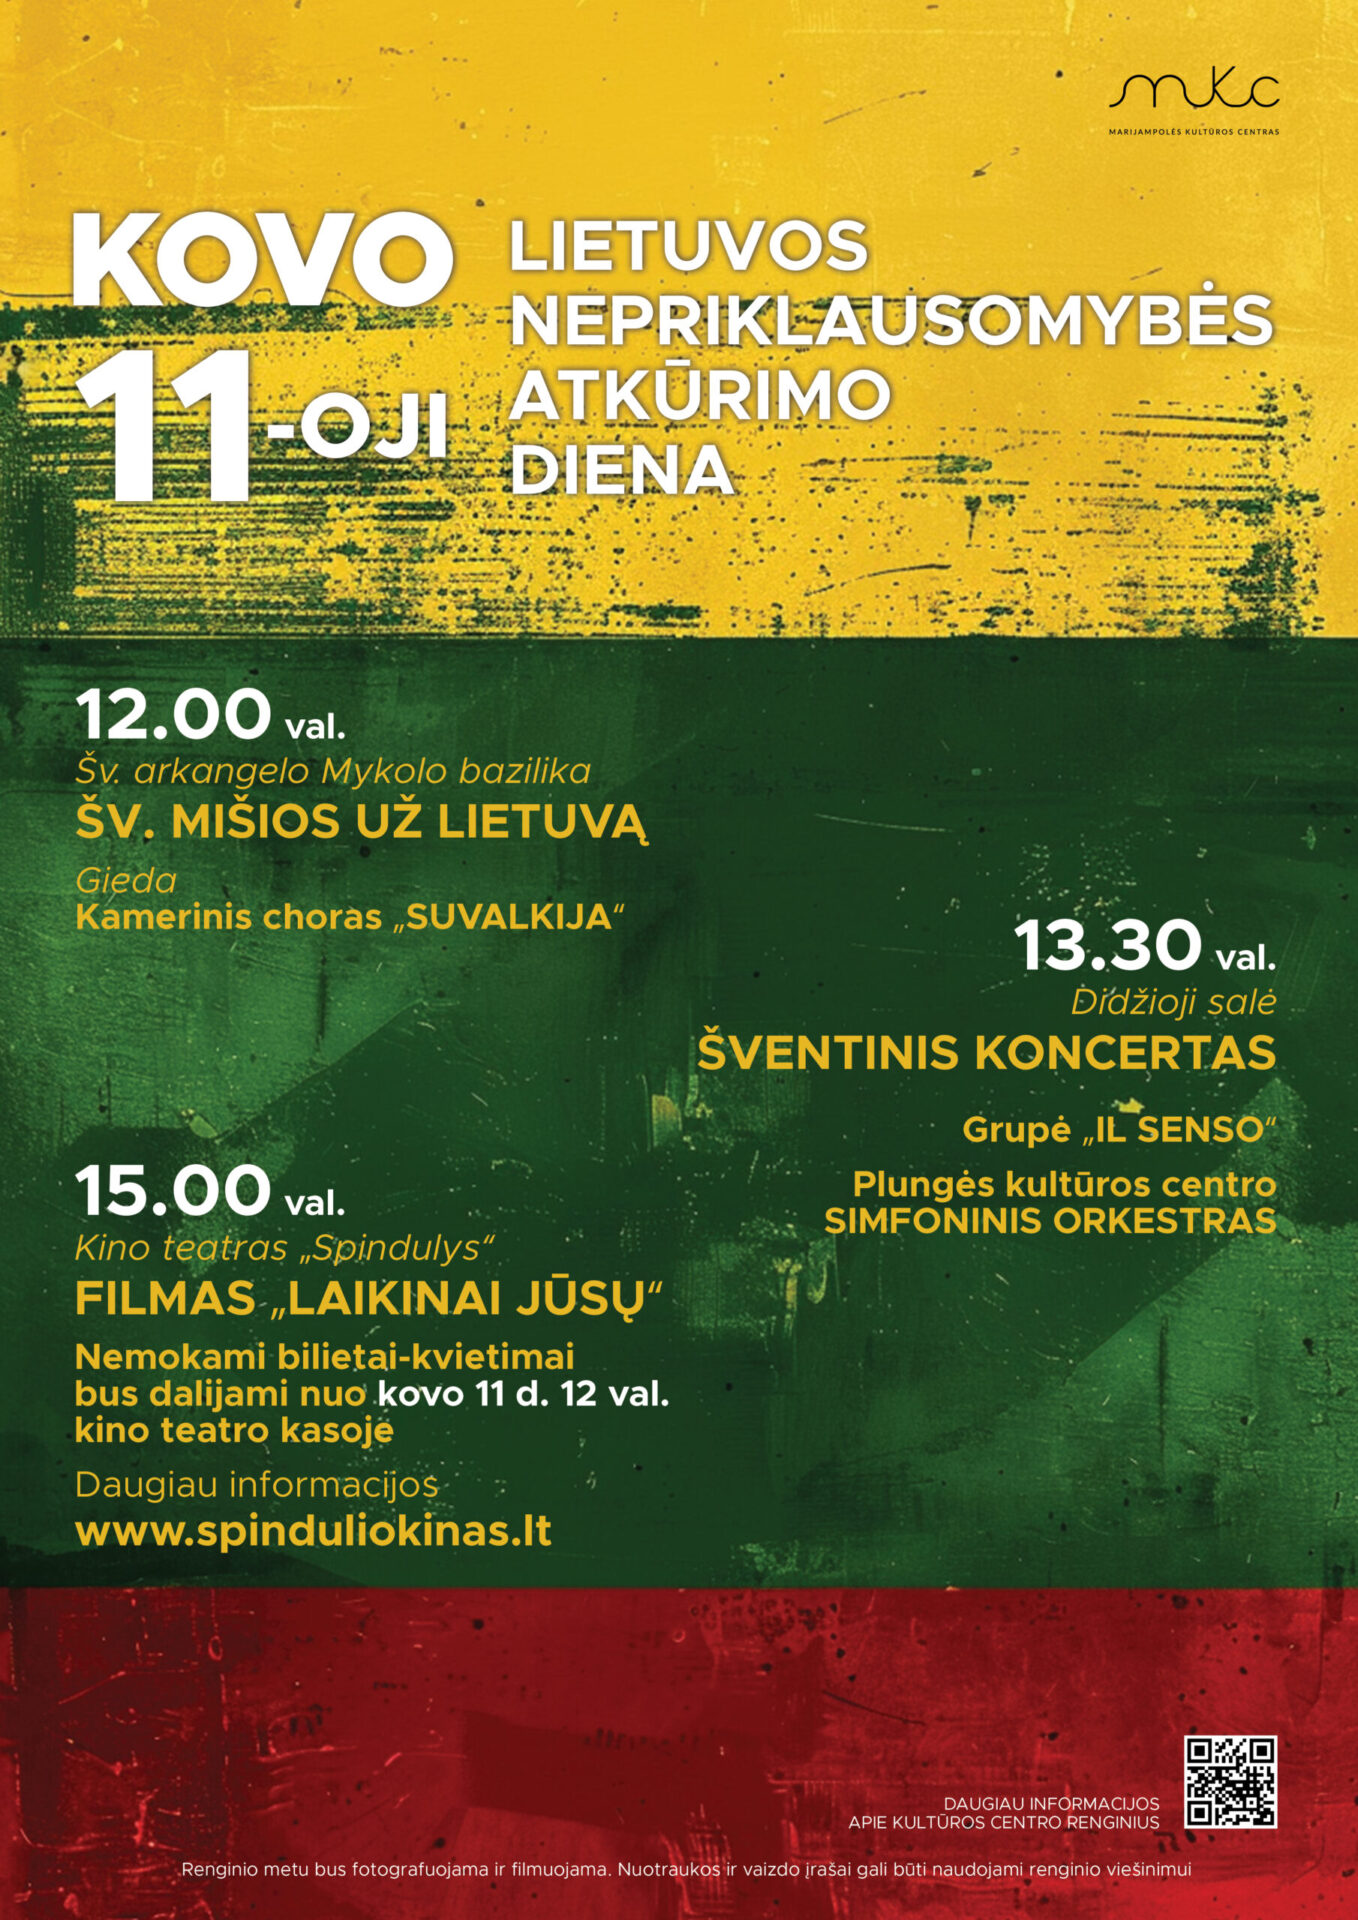 Lietuvos Nepriklausomybės atkūrimo dienos šventiniai renginiai | MARIJAMPOLĖ